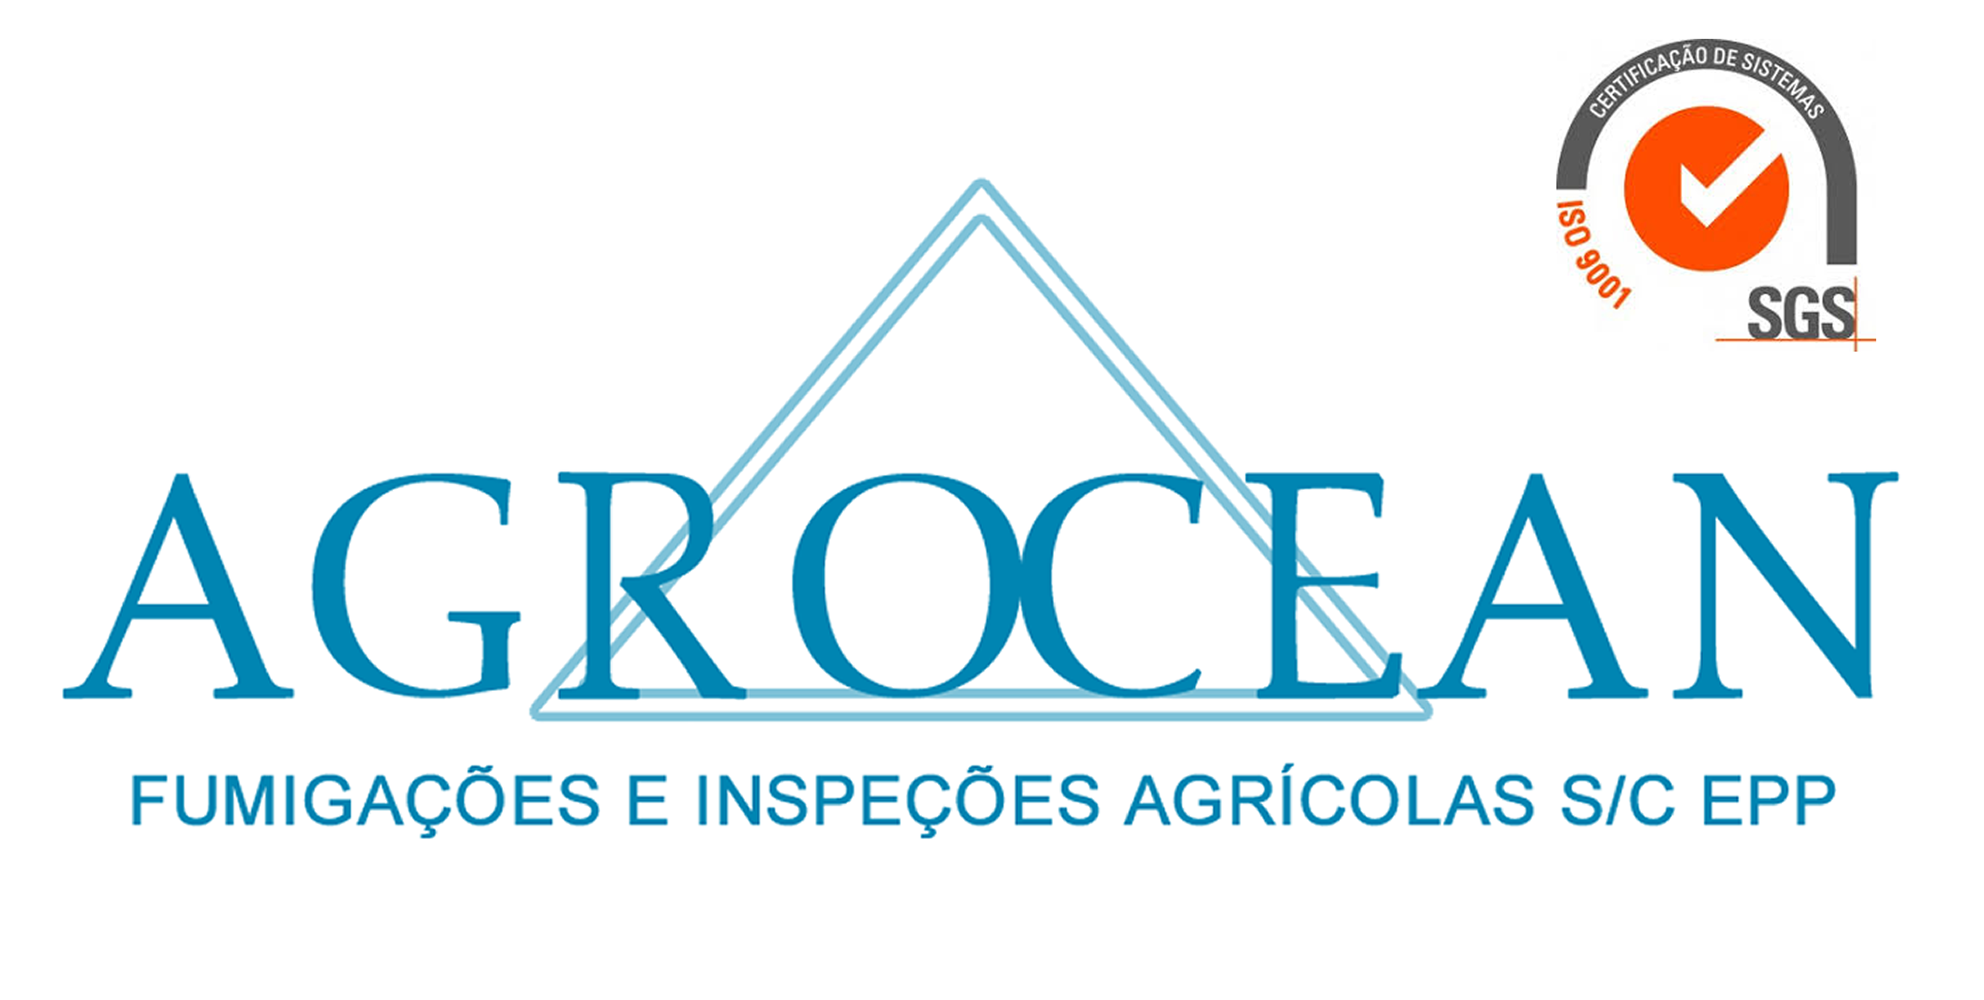 Agrocean